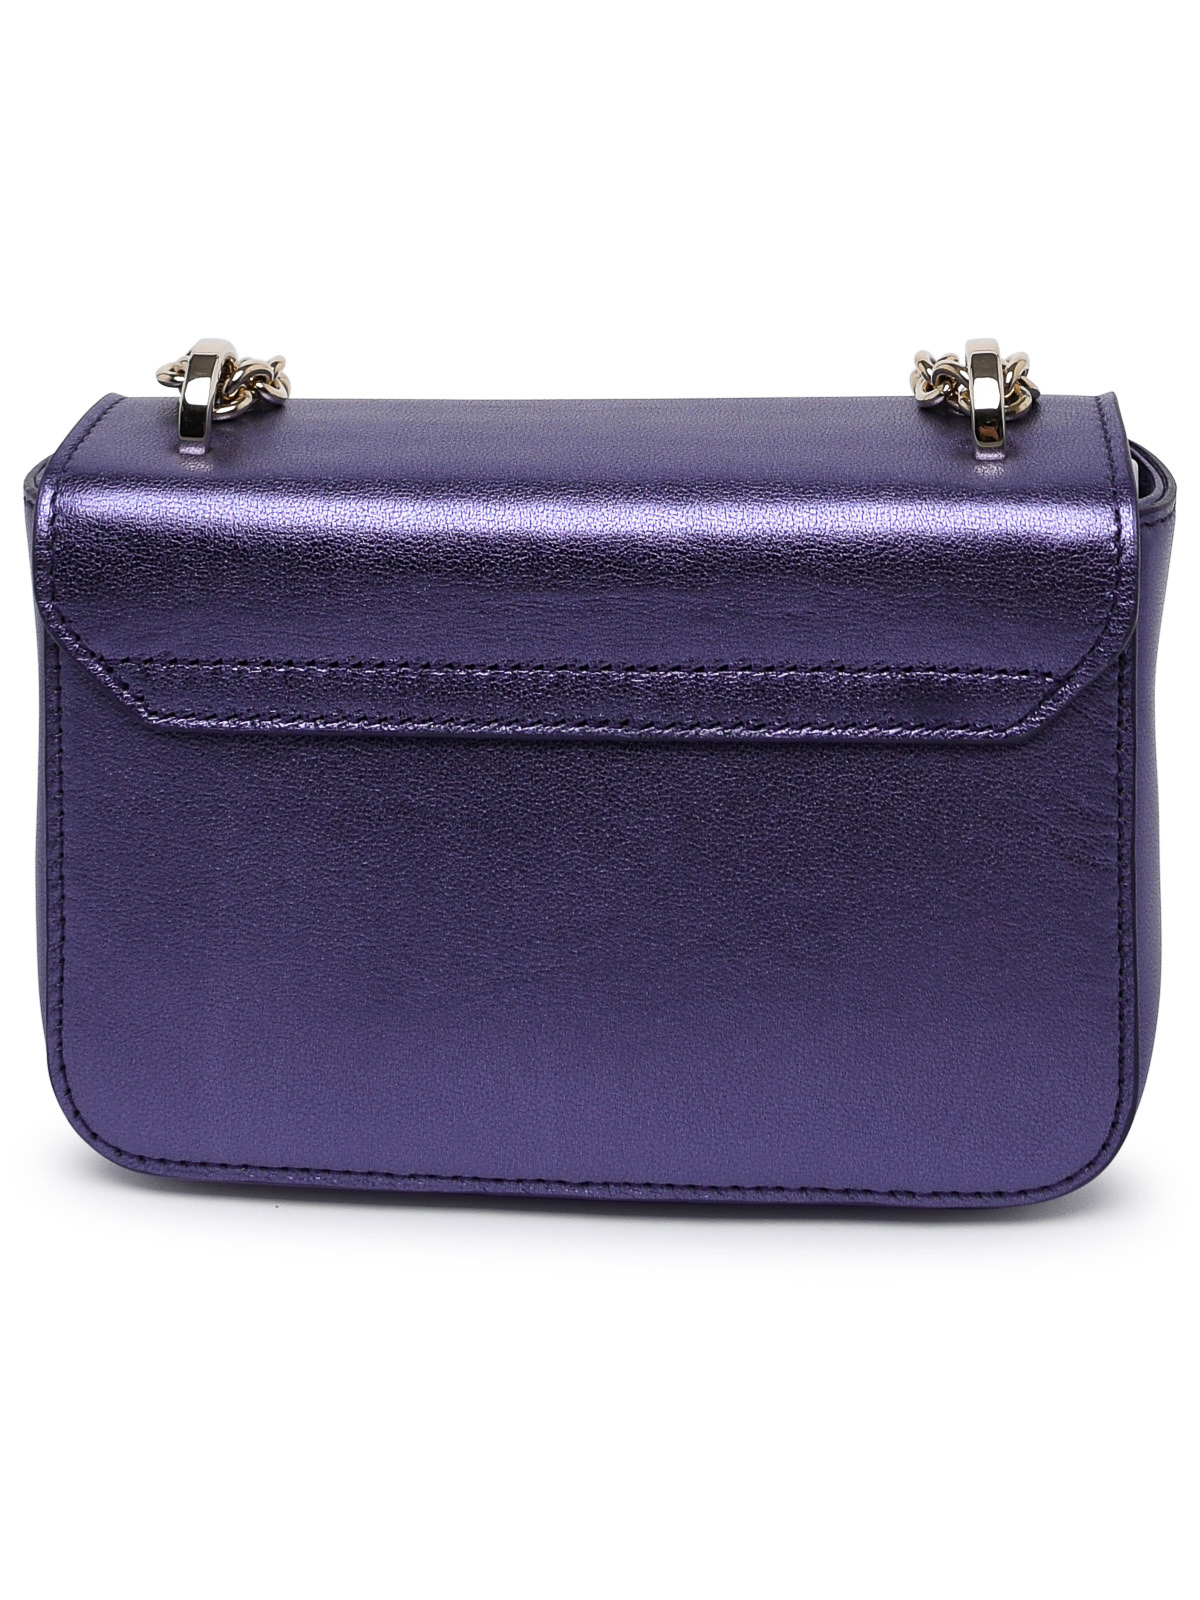 Shop Furla Metropolis Bag In Metallic Leather In Purple